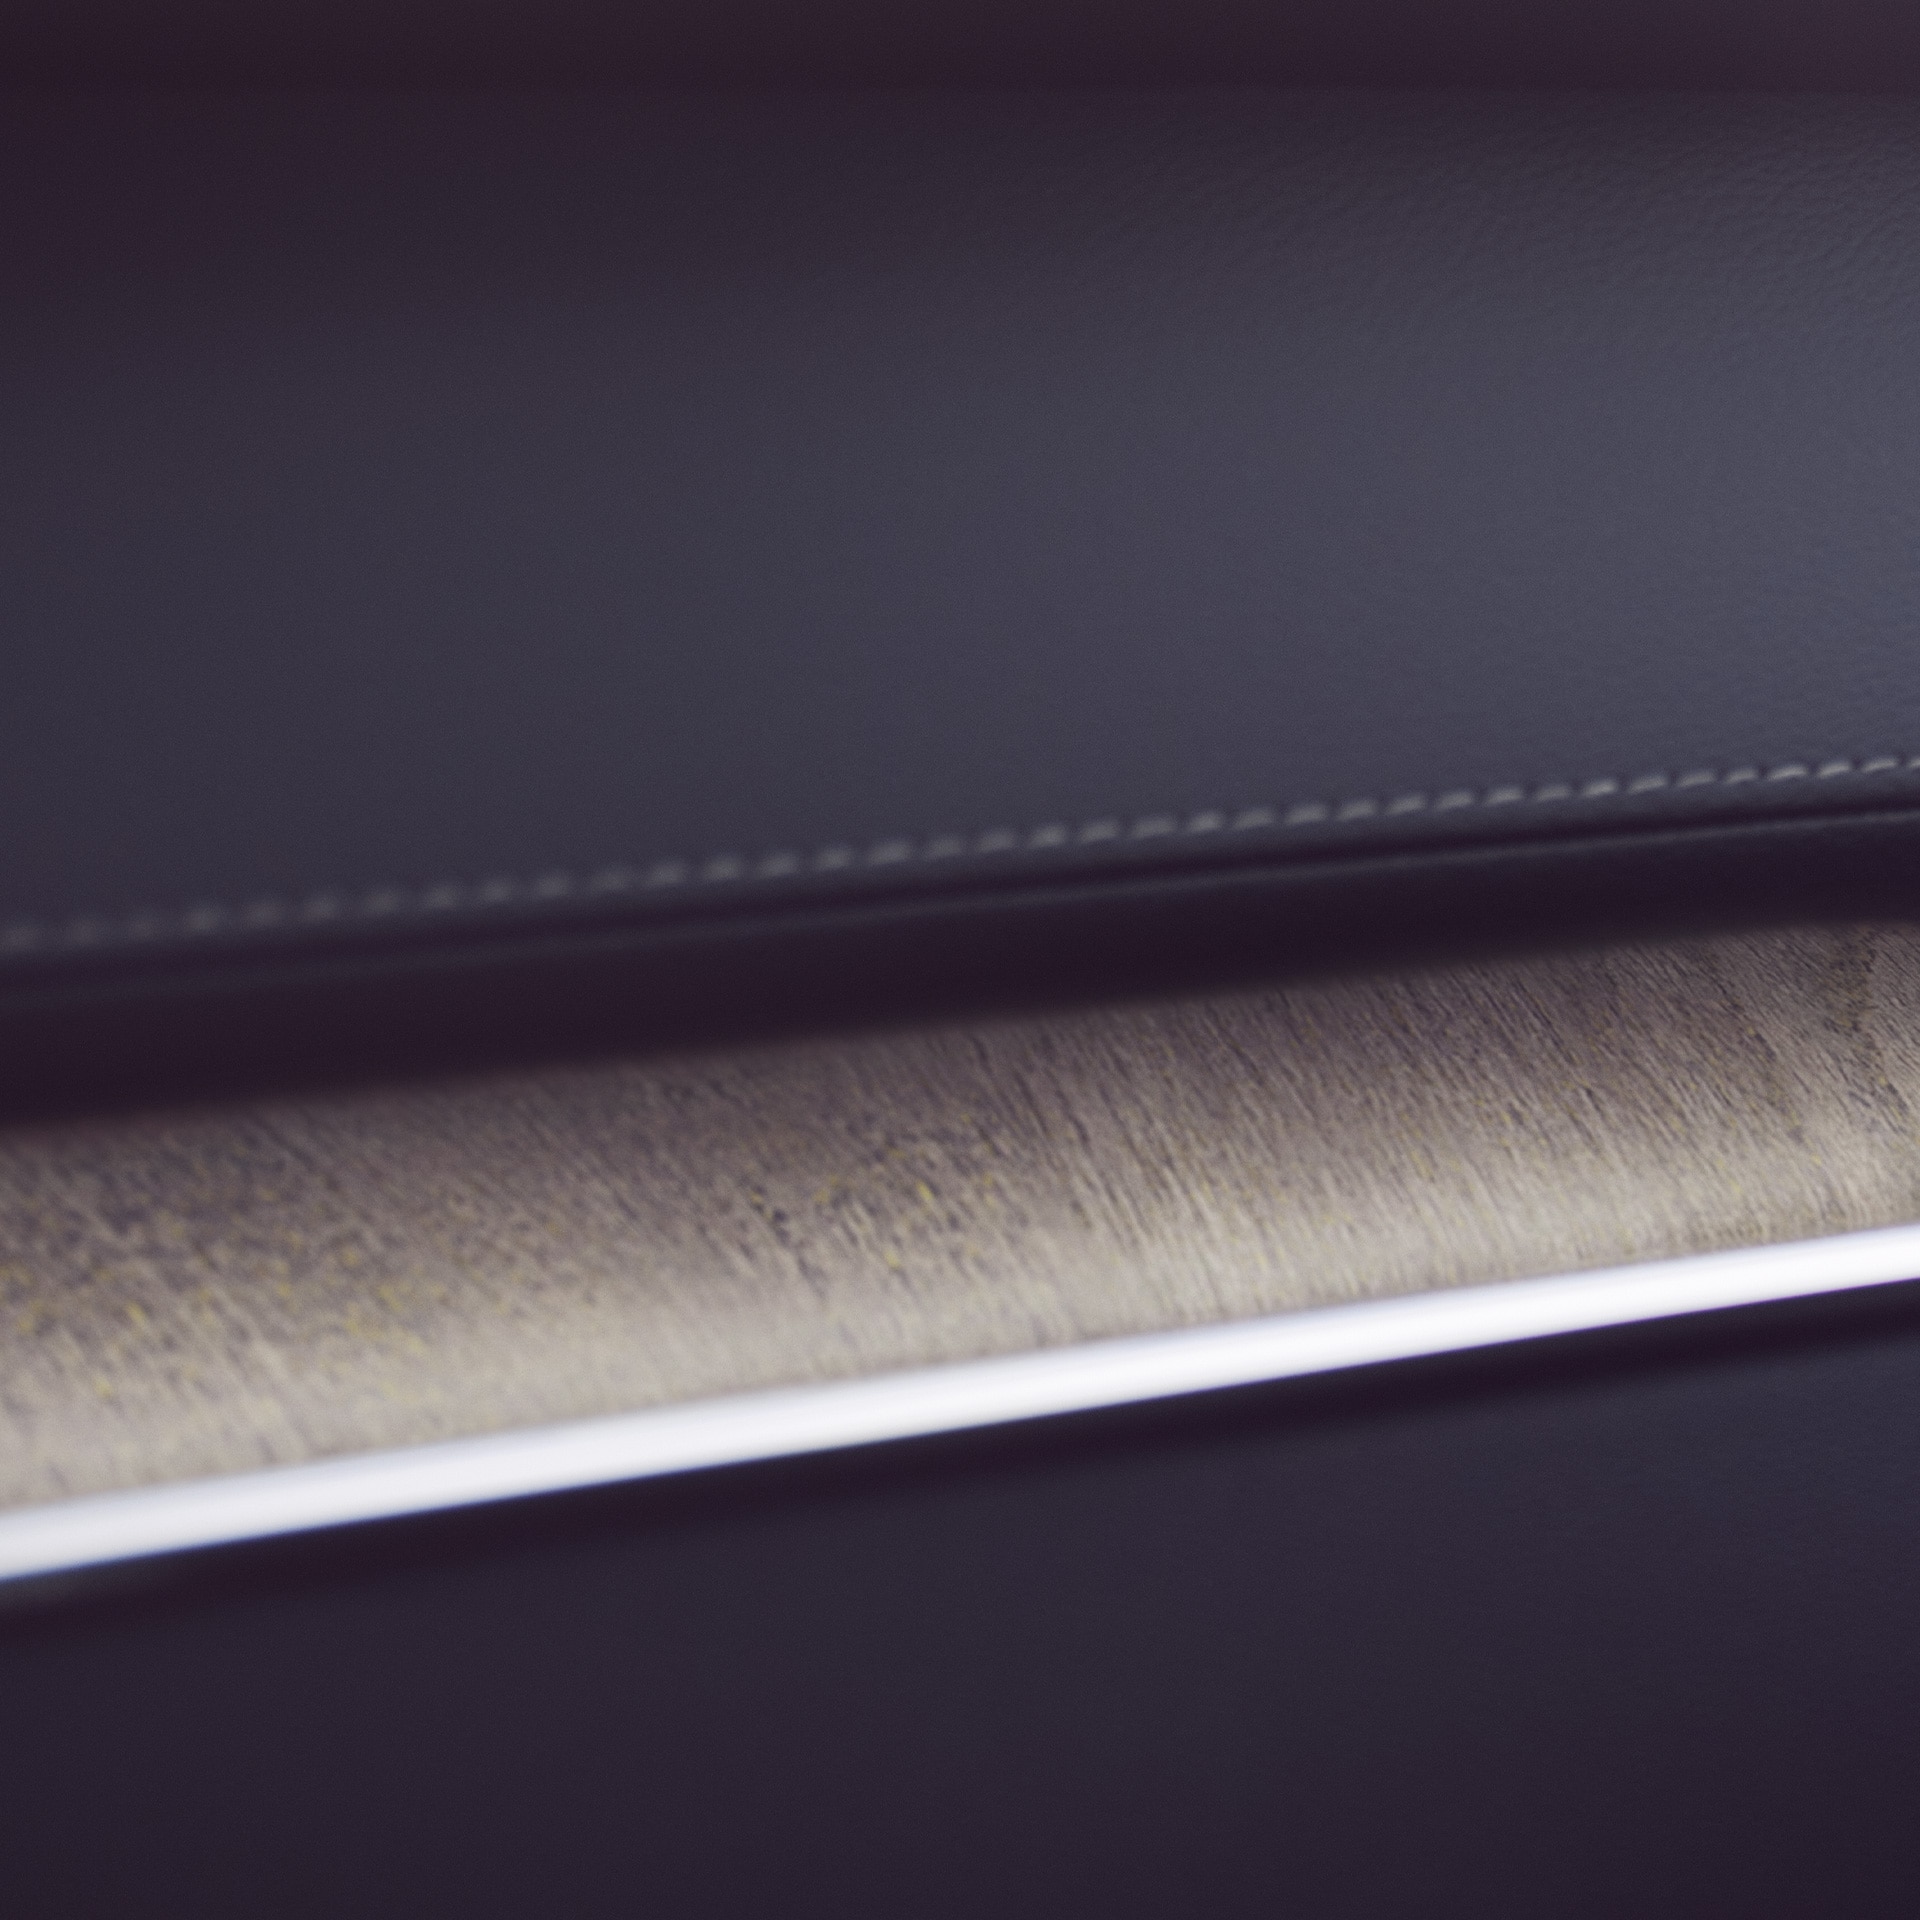 Las incrustaciones de madera de abeto genuina en el Volvo XC60 añaden un toque natural.